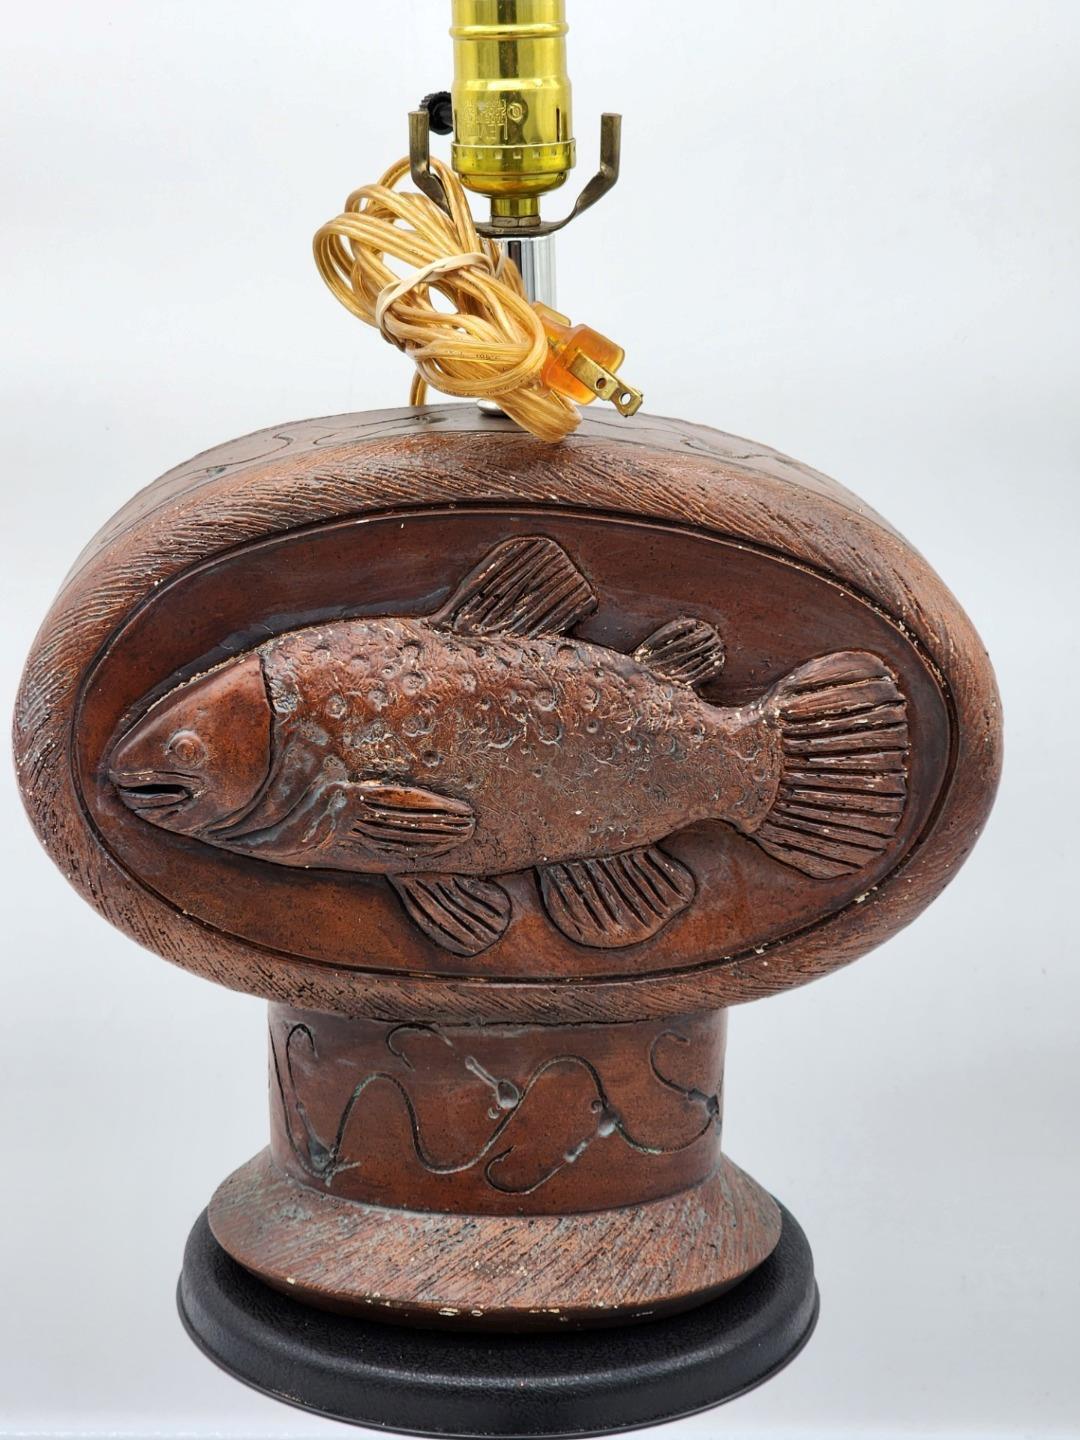 Ceramic Wood Look Fish Lamp by Vintage Verandah 1992 Rustic Look